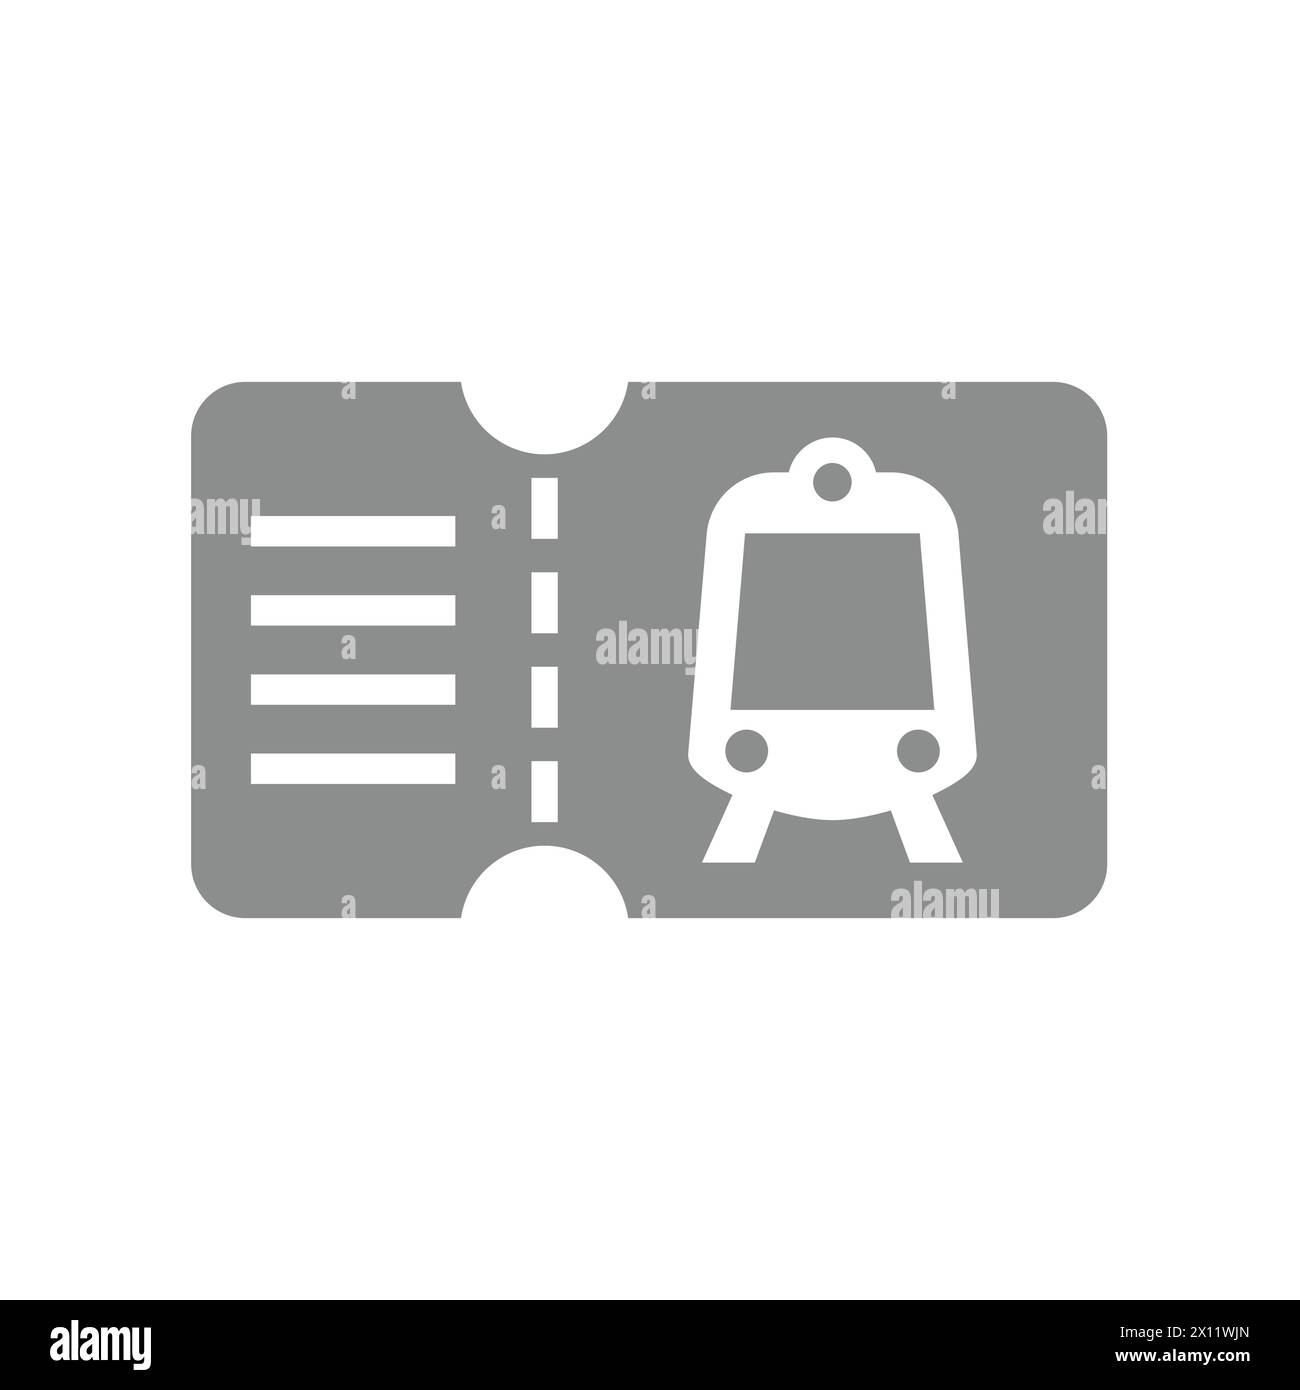 Vettoriale dei biglietti del treno o della metropolitana. Semplice icona glifo. Illustrazione Vettoriale